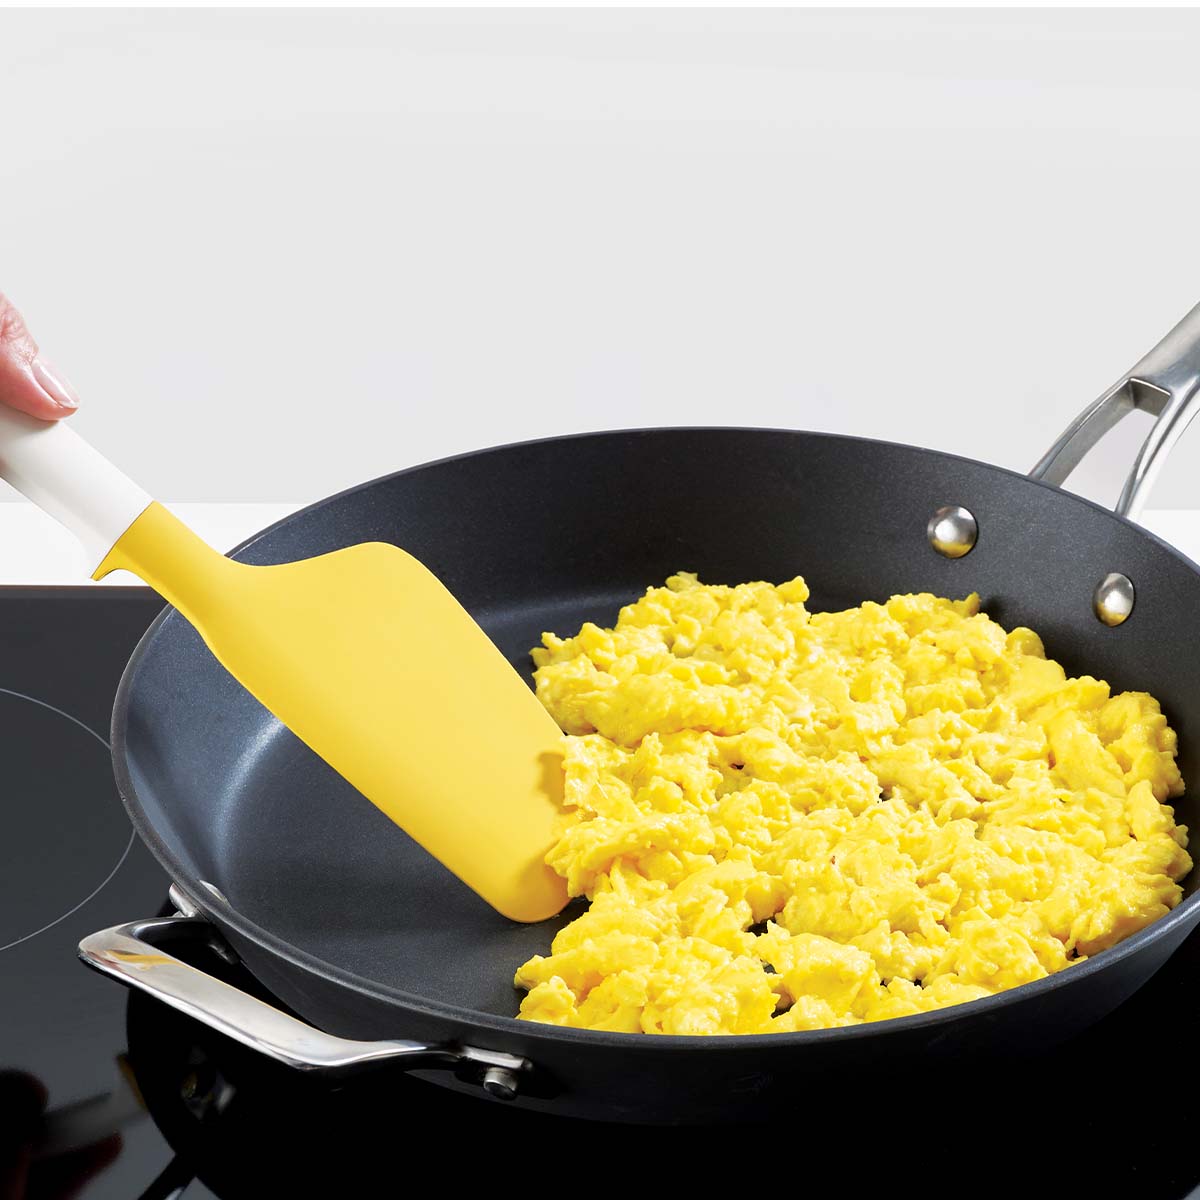 Elevate™ spatula za jaja, Yellow